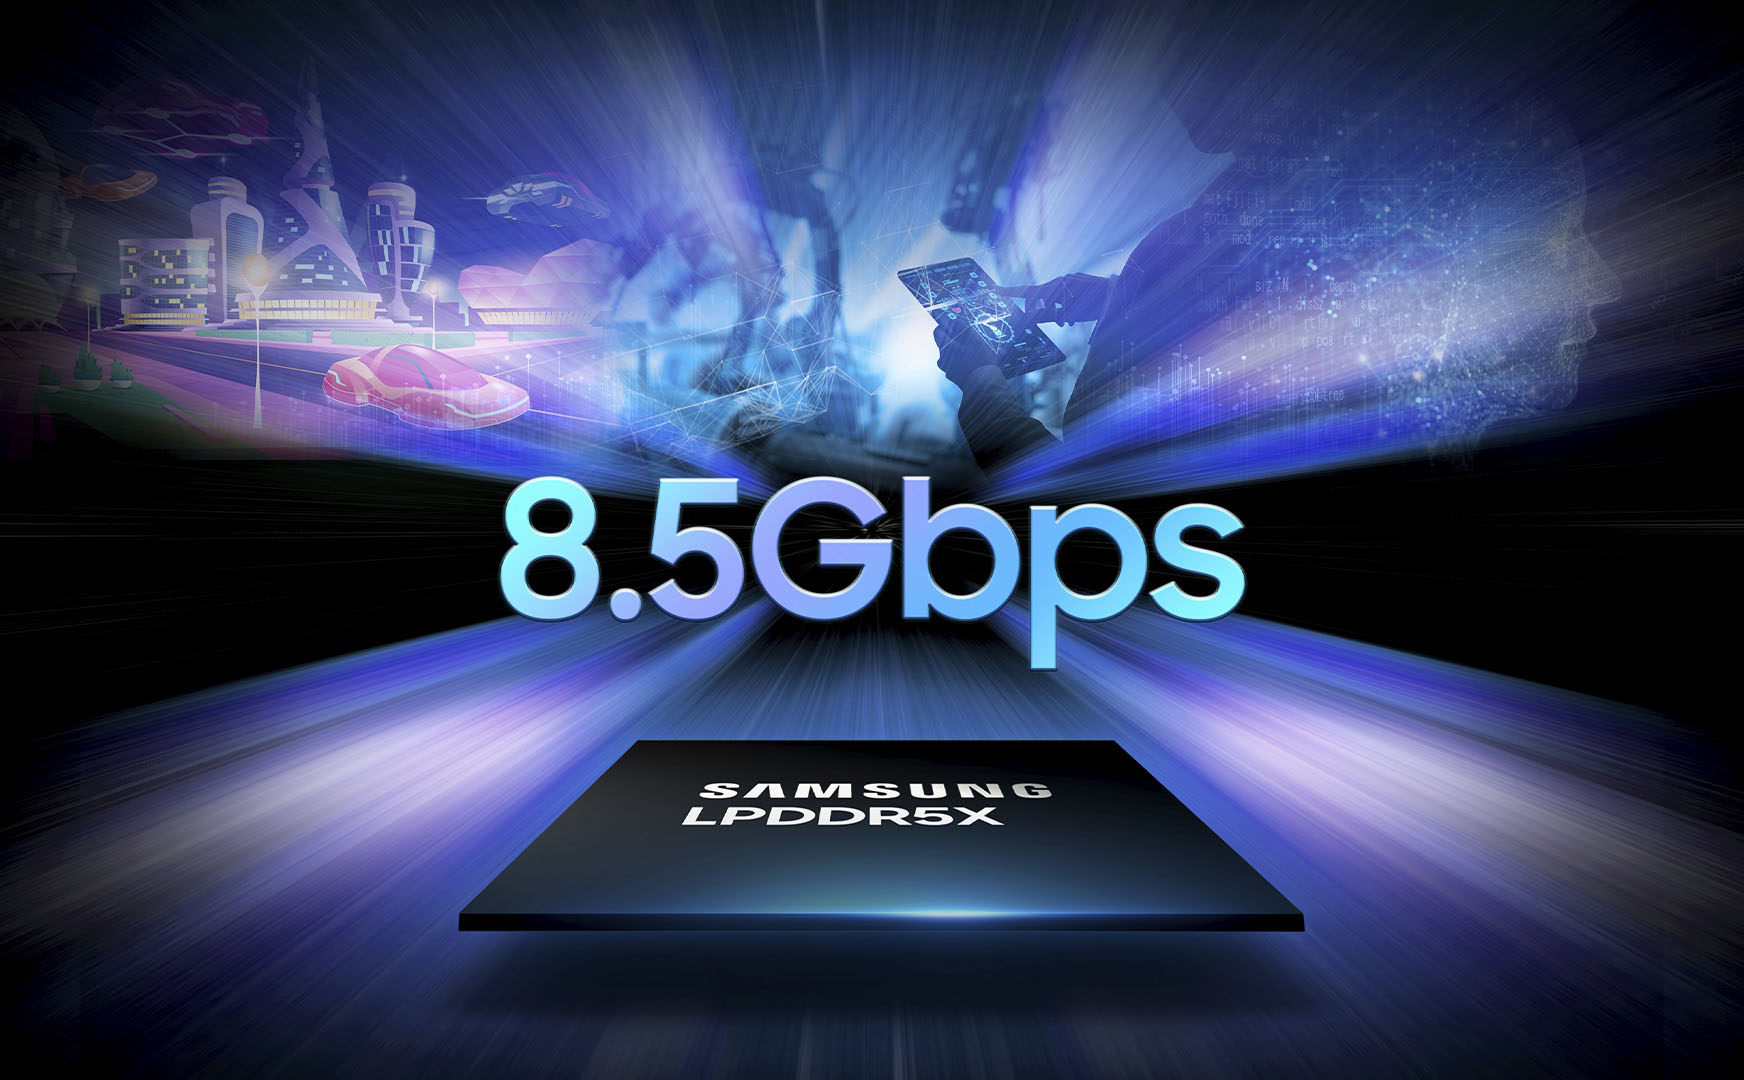 Samsung LPDDR5X DRAM có tốc độ nhanh nhất thế giới - 8.5 Gbps